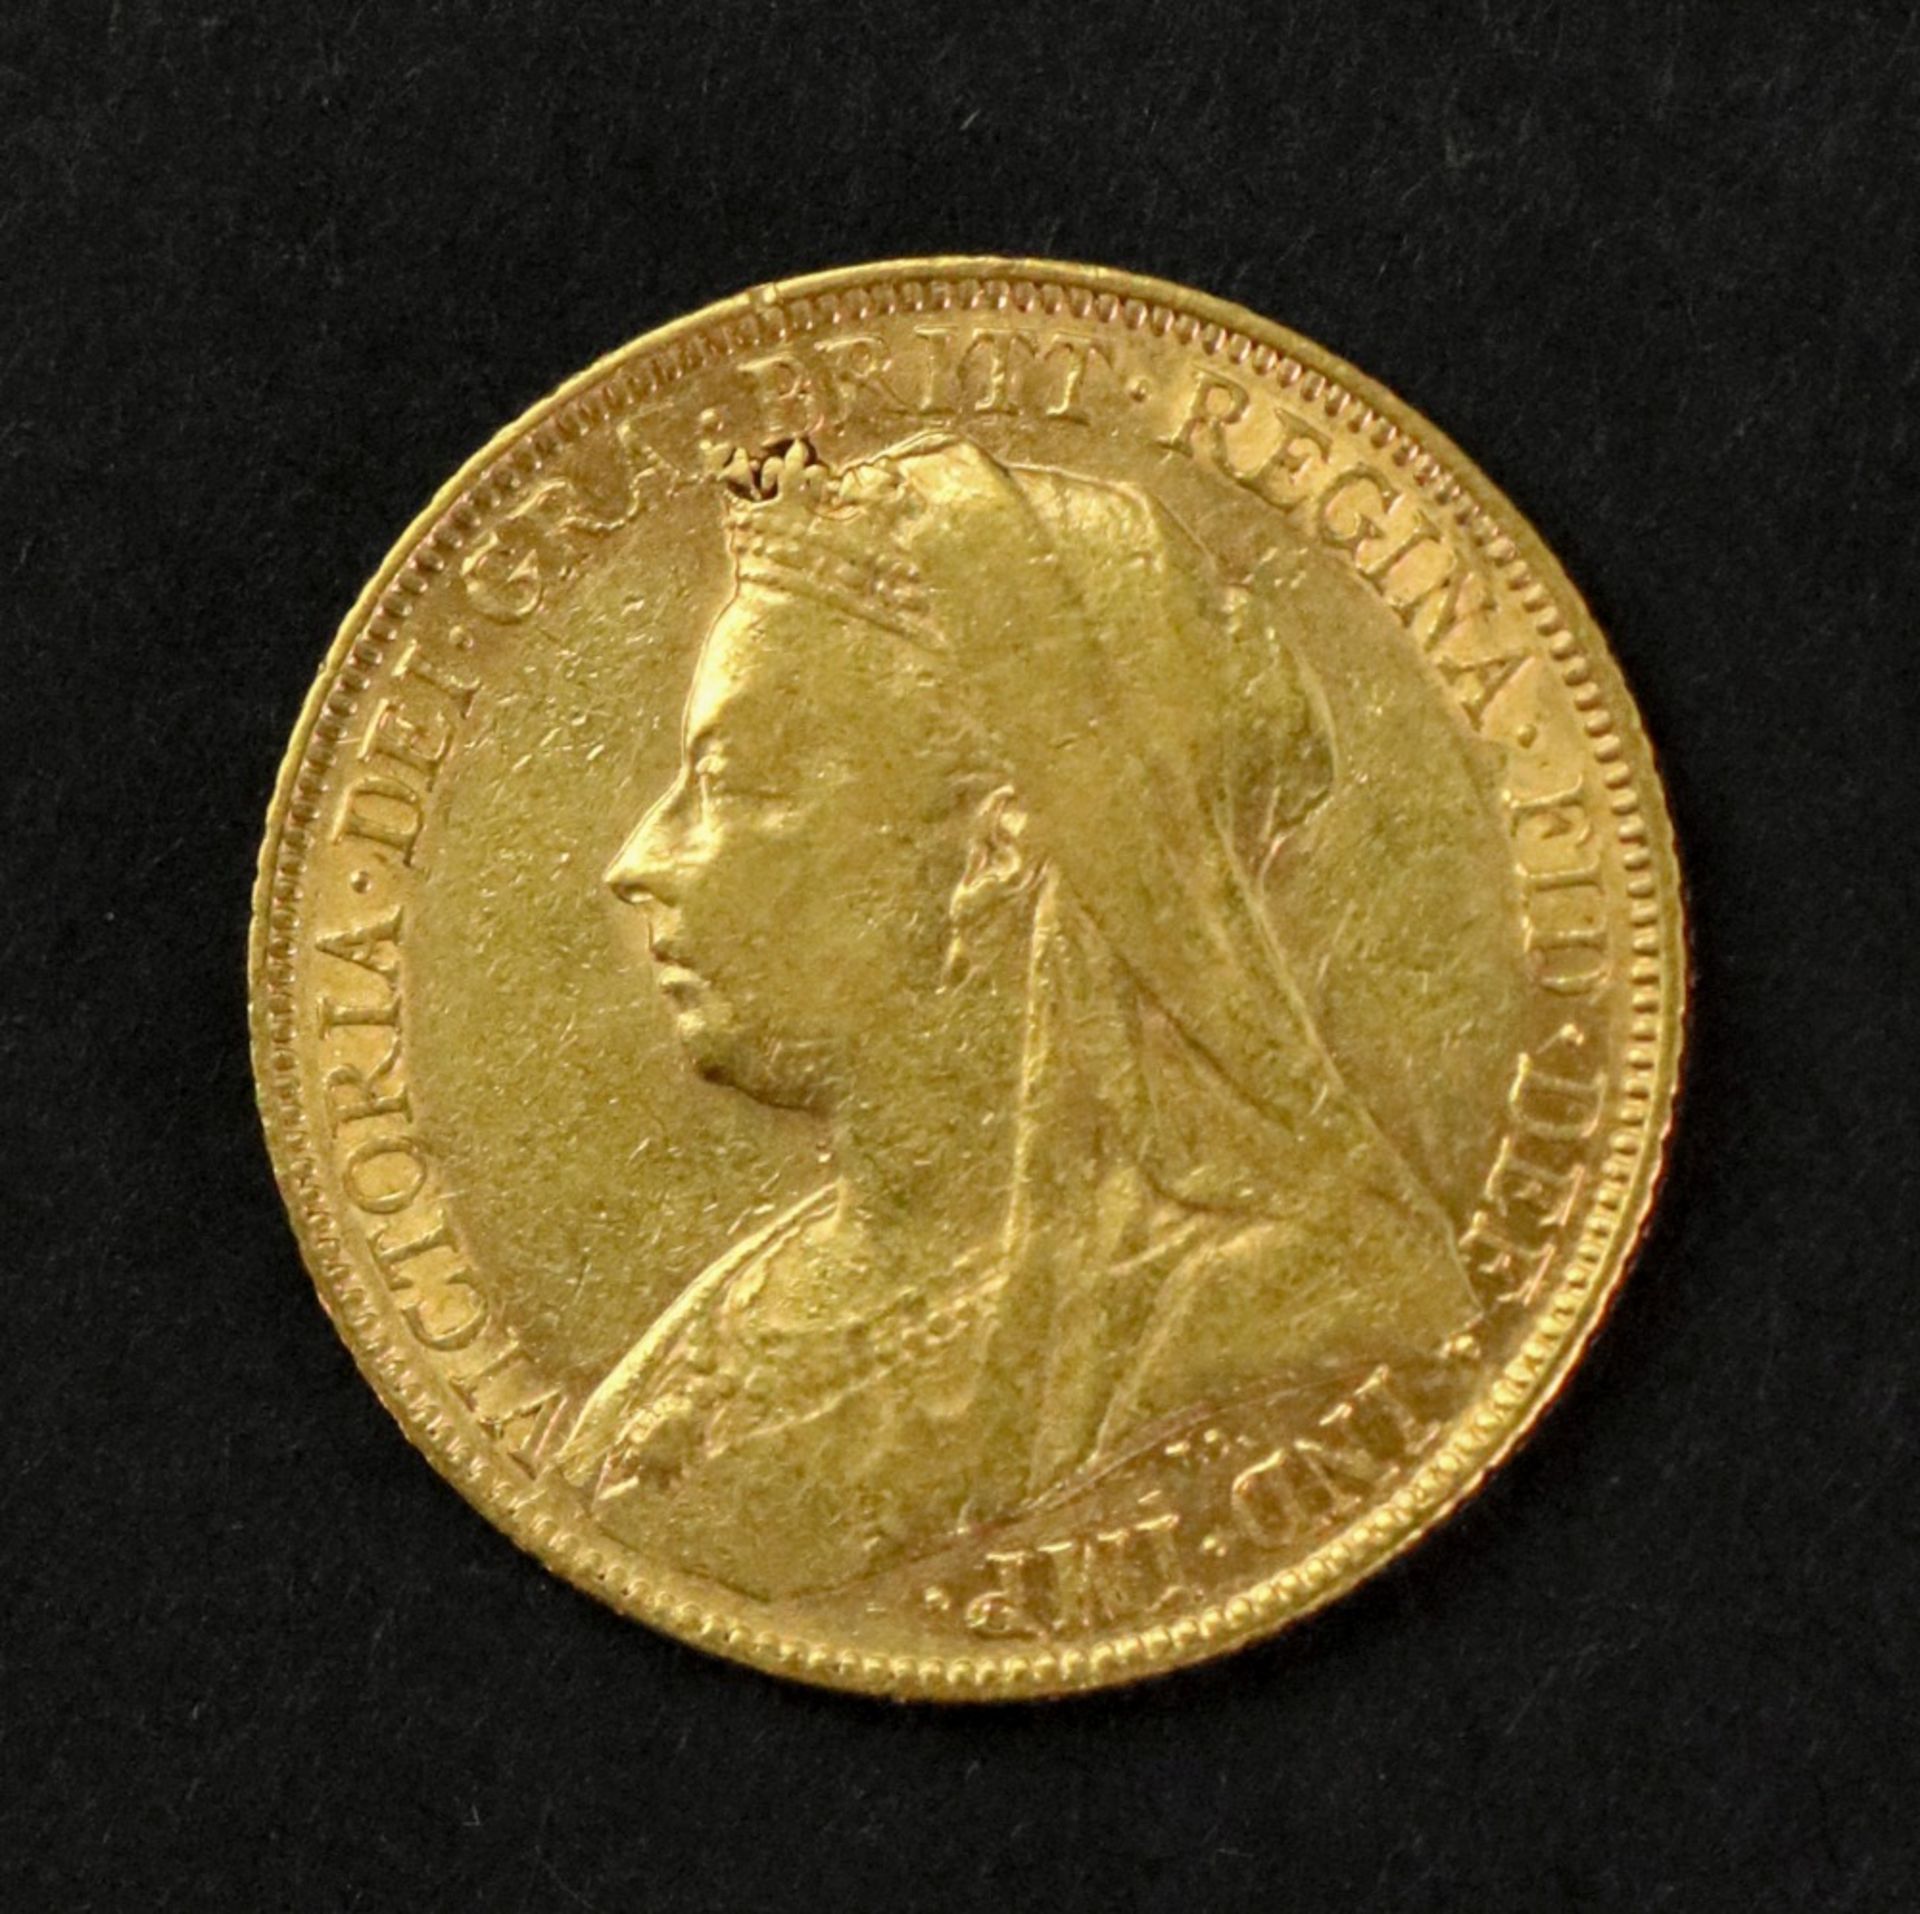 Queen Victoria sovereign 1899. - Bild 2 aus 3